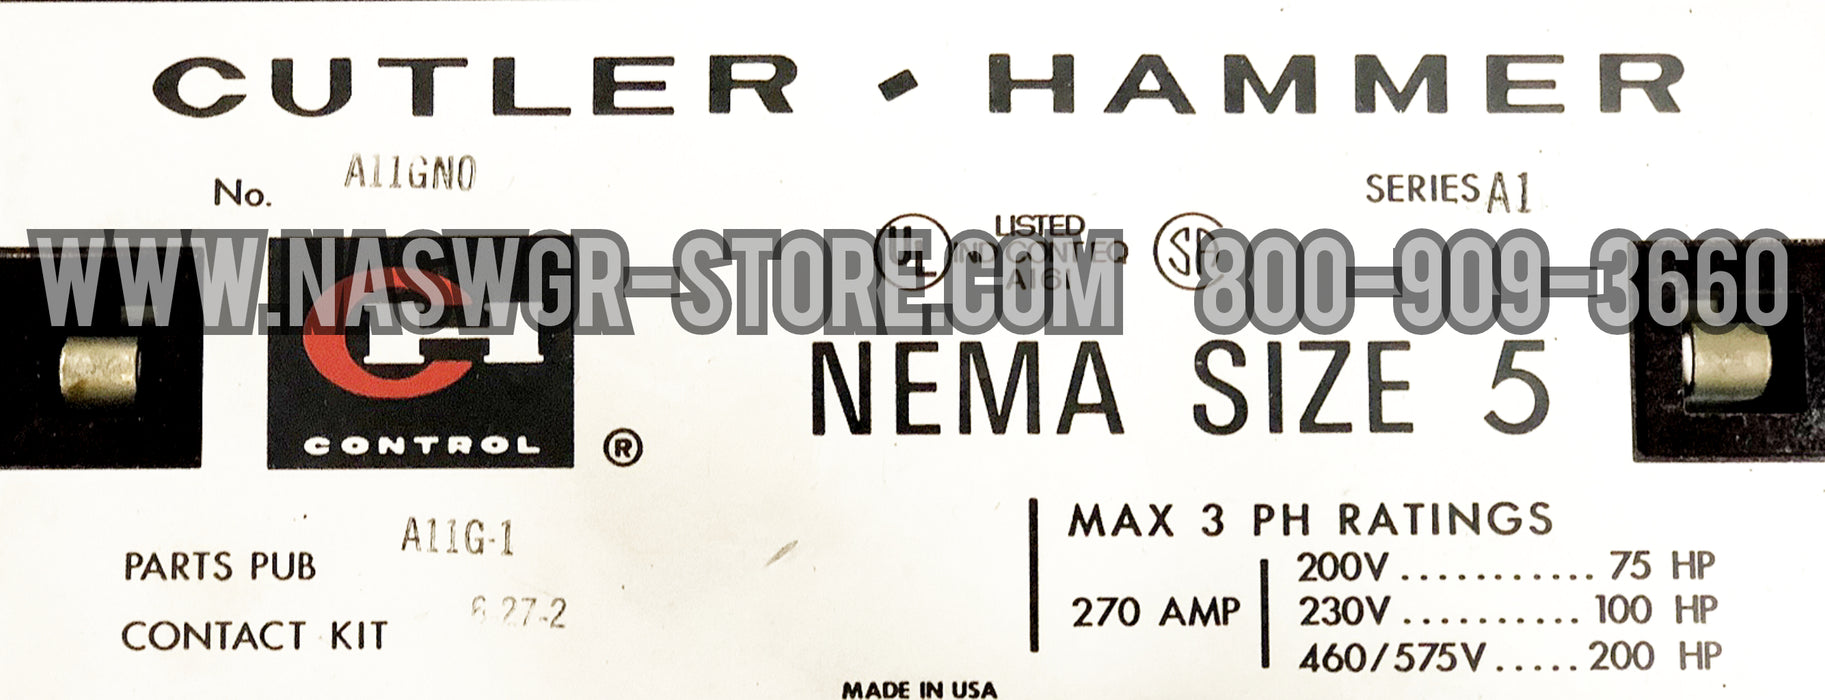 Cutler Hammer A11GN0 Nema Size 5 Contactor